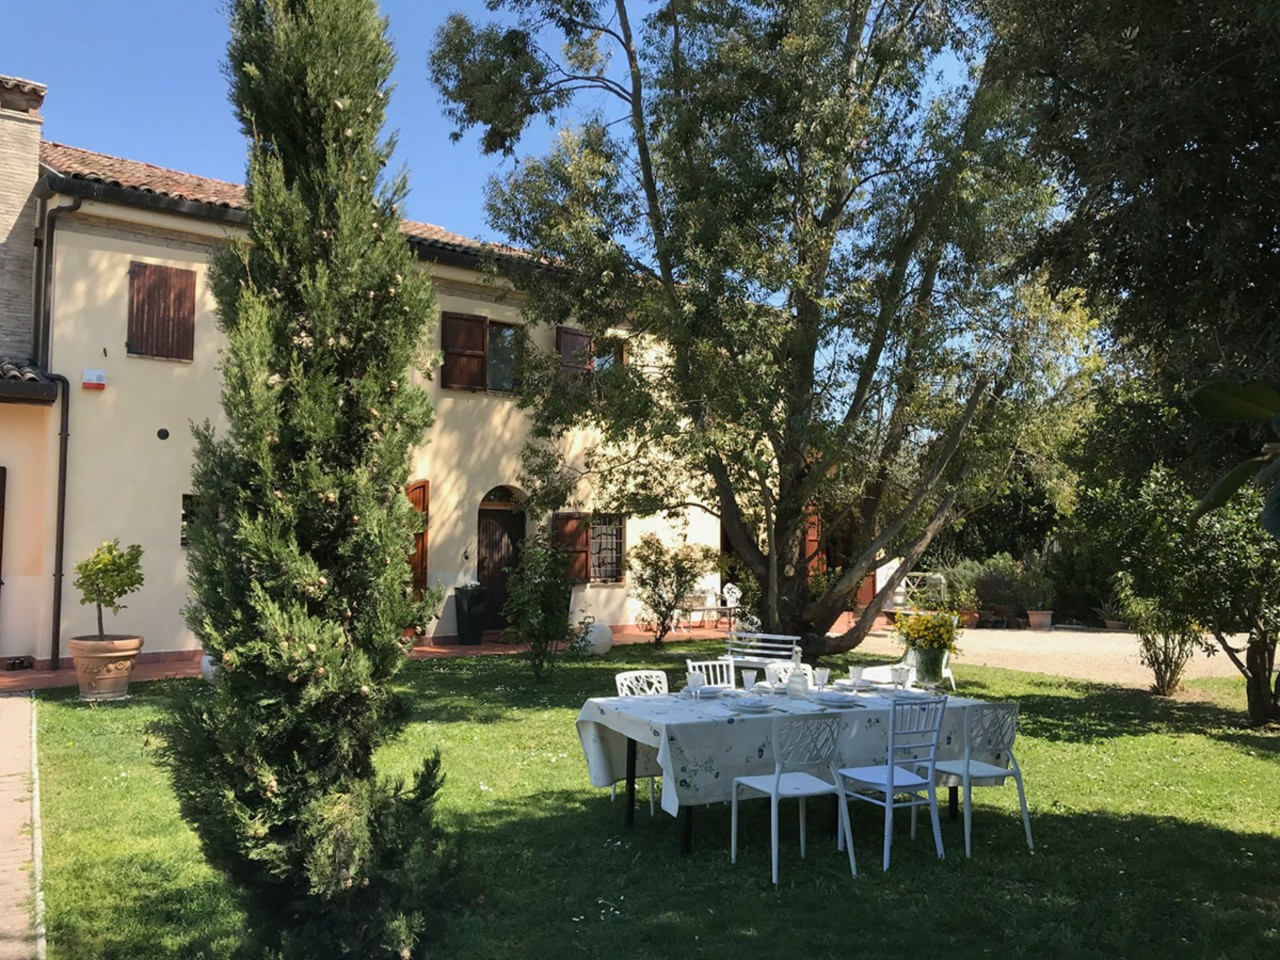 Villa Bifamiliare in vendita a Ravenna, 3 locali, zona Località: Ravenna, prezzo € 450.000 | PortaleAgenzieImmobiliari.it